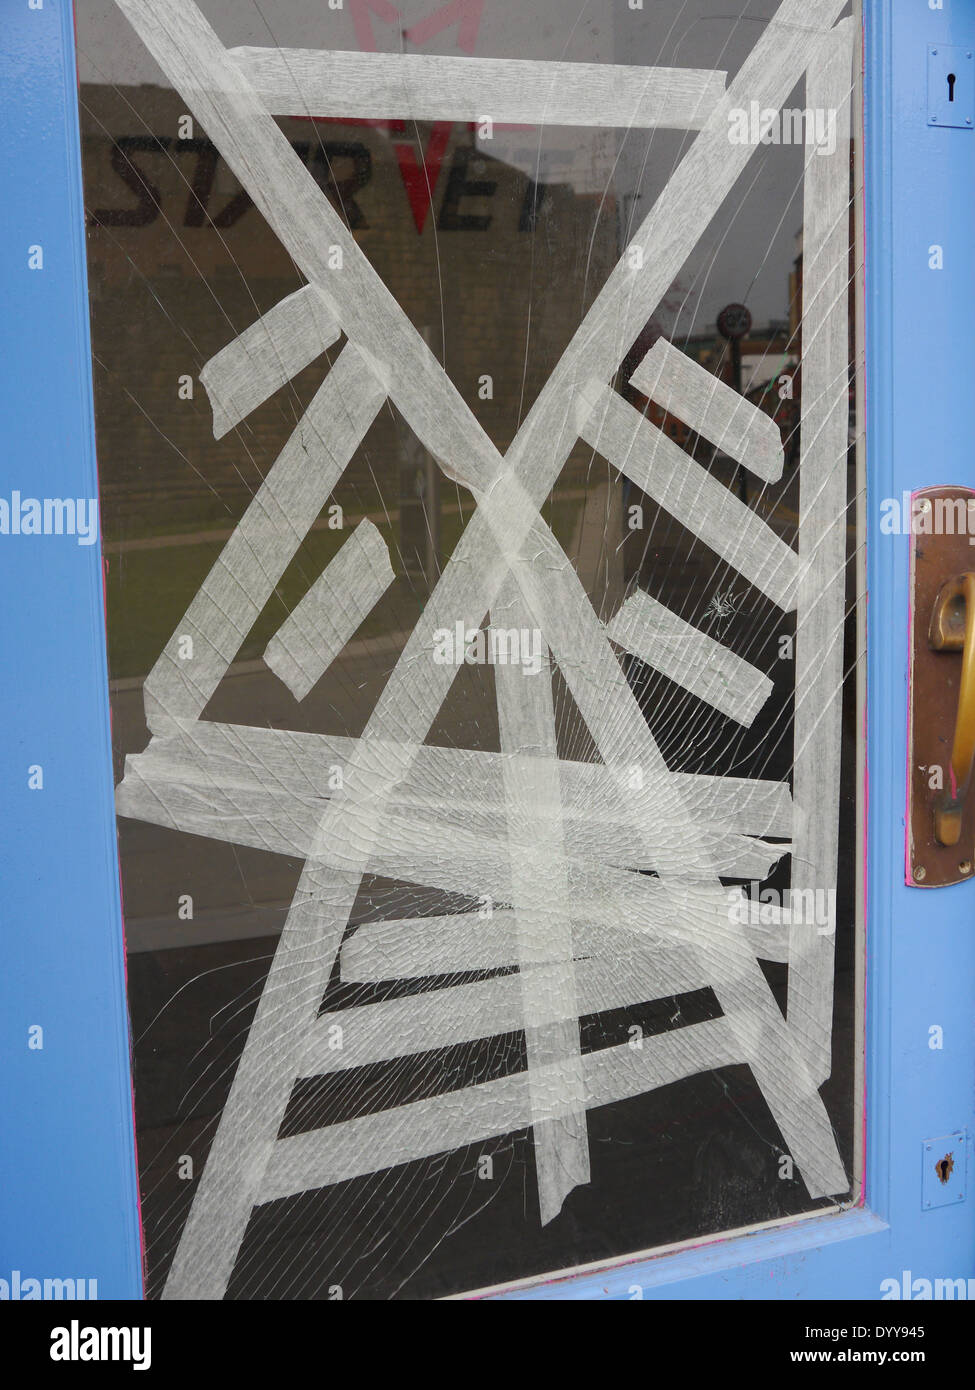 Atti di vandalismo - vetro rotto di locali commerciali, Newcastle upon Tyne, England, Regno Unito Foto Stock